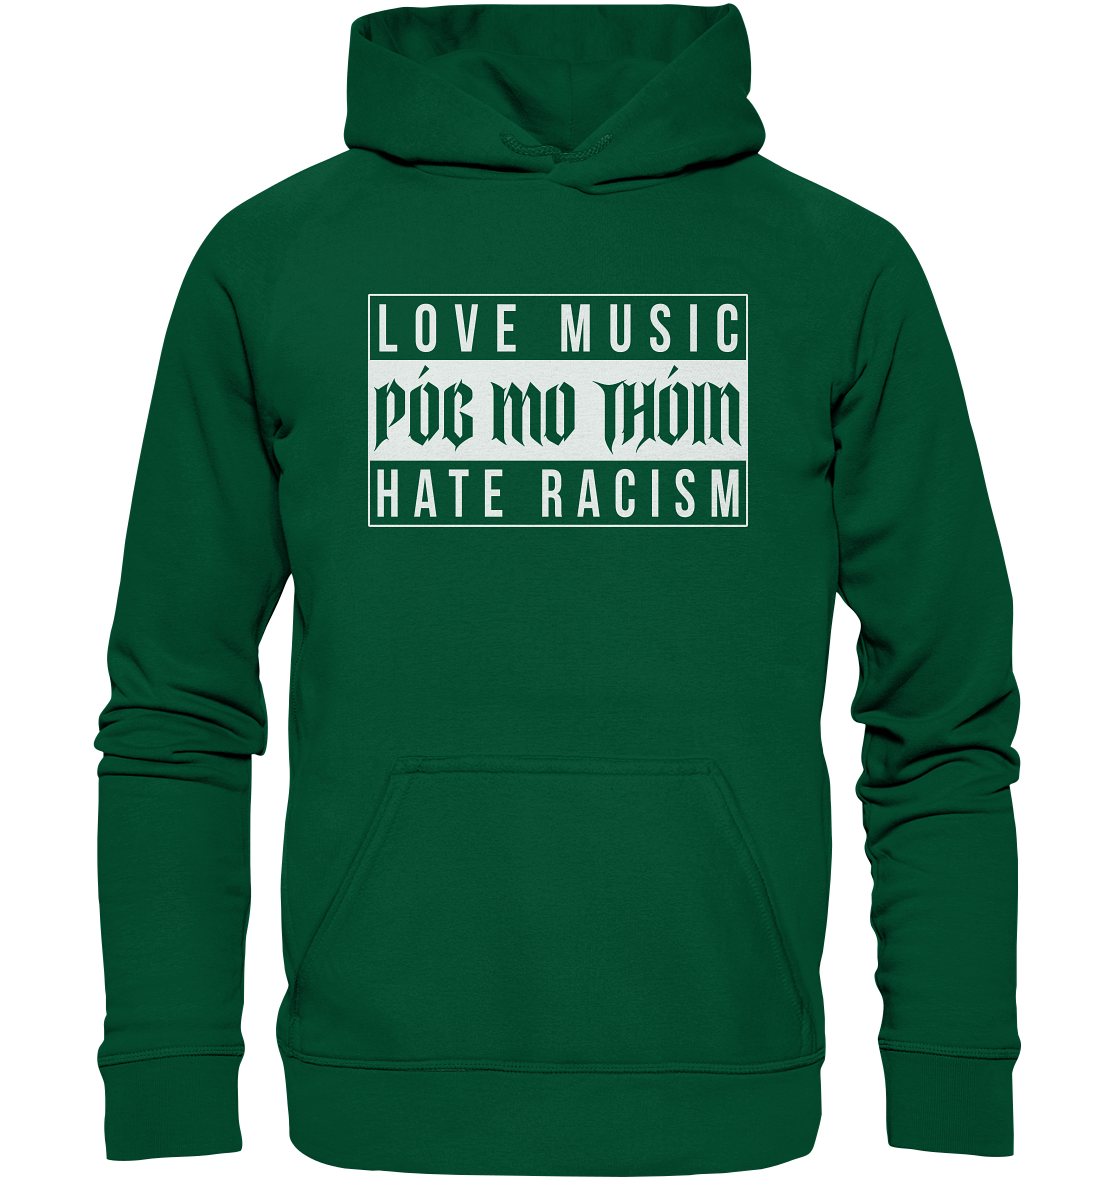 Póg Mo Thóin Streetwear "Love Music Hate Racism" - Basic Unisex Hoodie